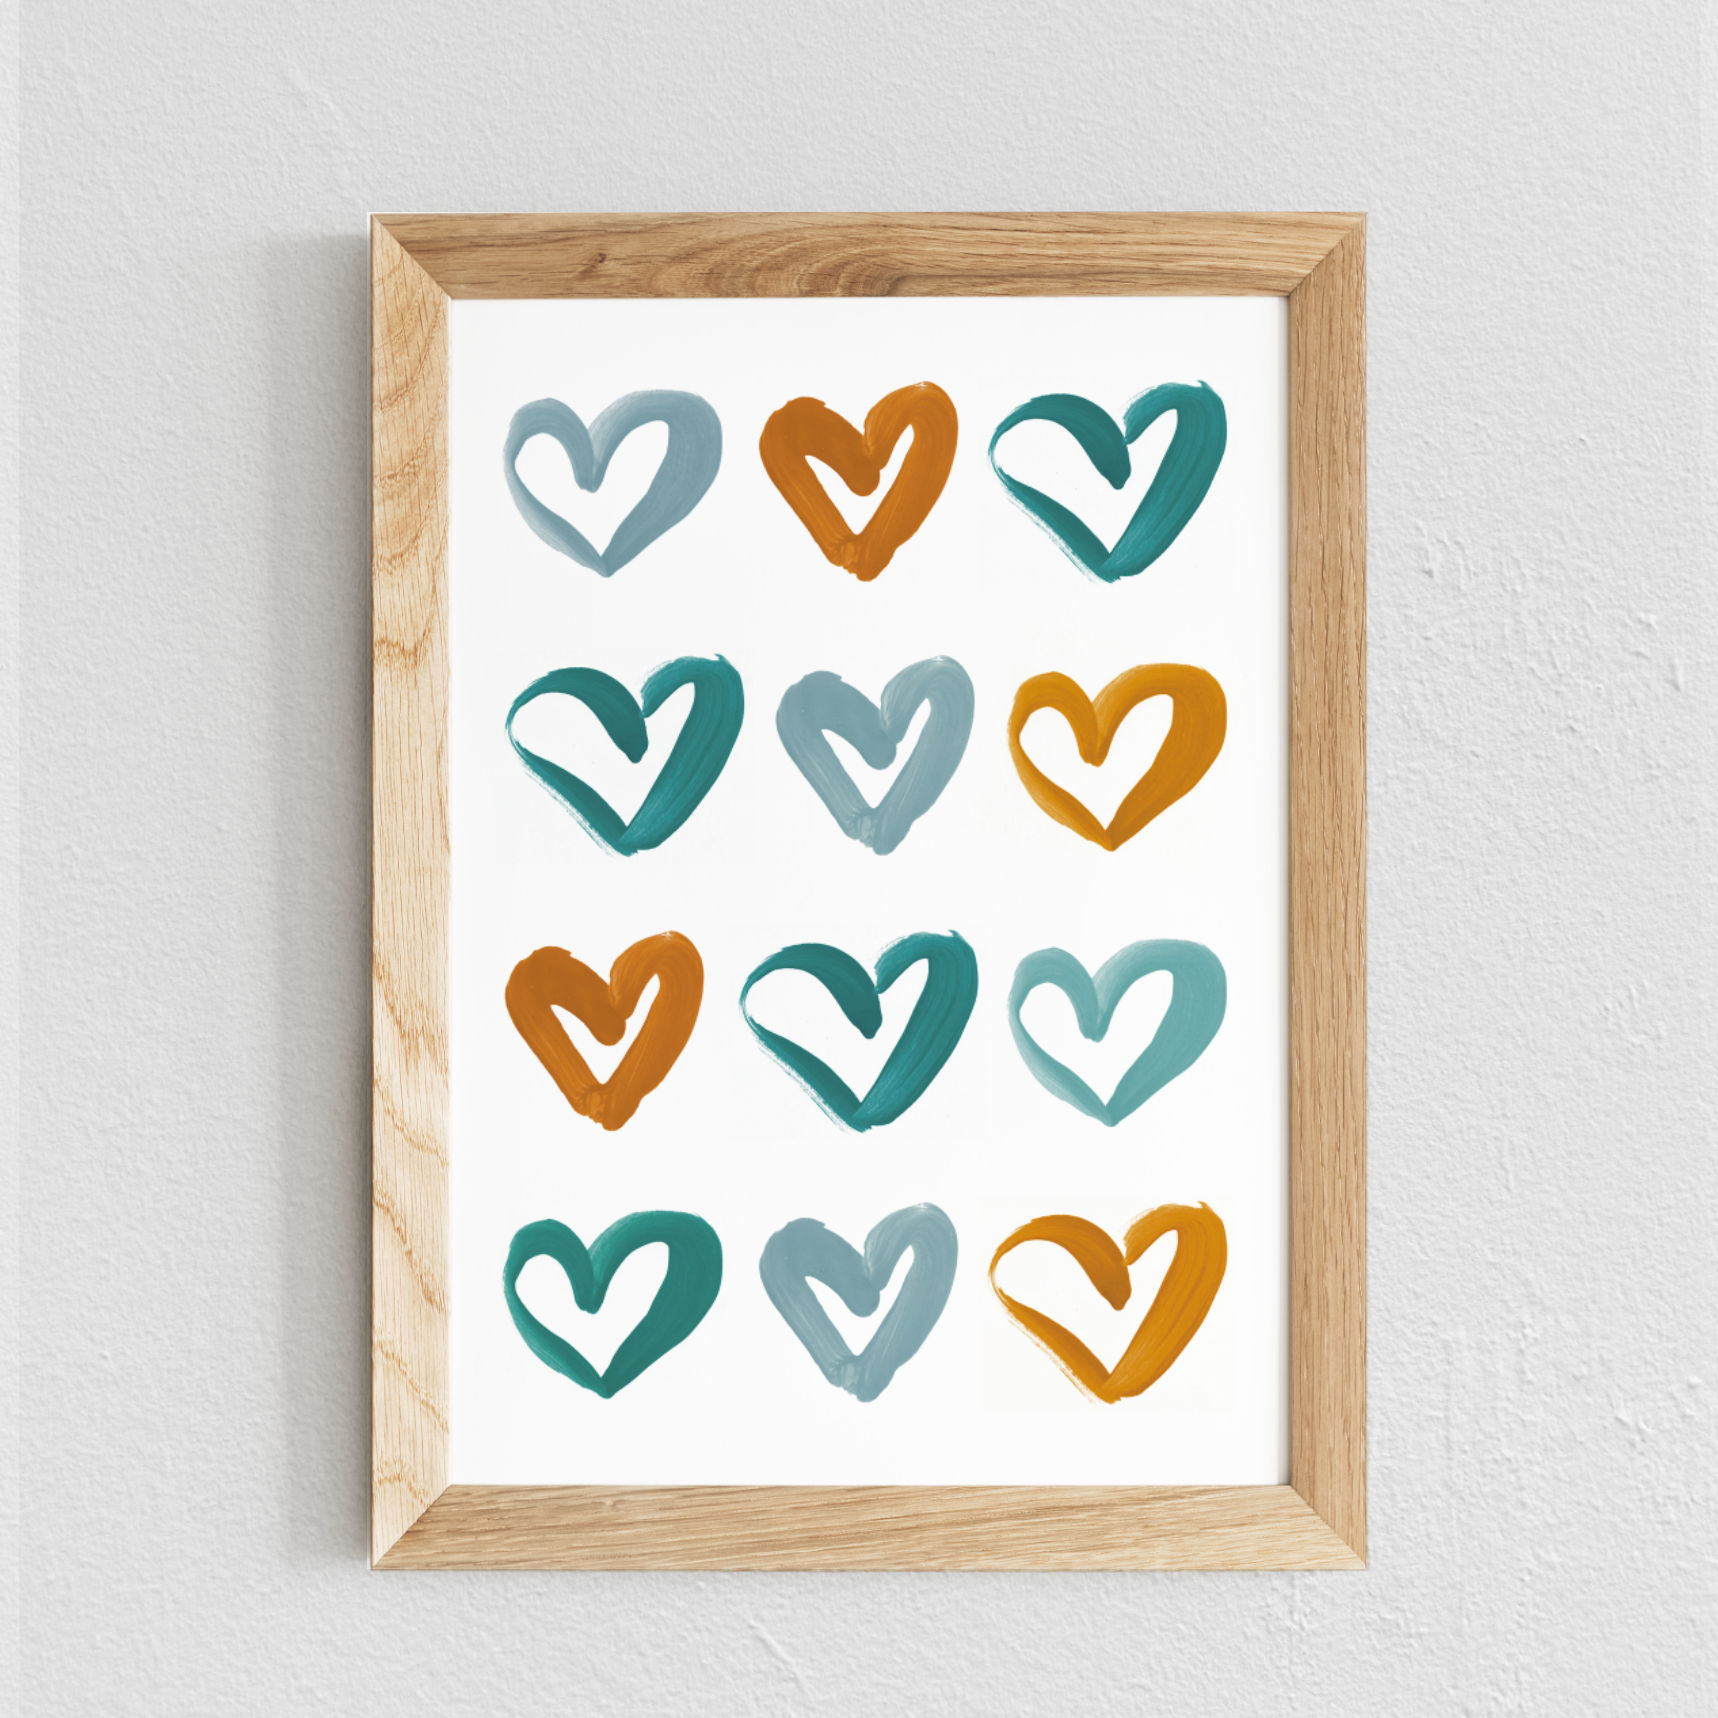 Poster chambre bébé / enfant ‘cœurs’ moutarde et bleu canard - SEVEN PAPER